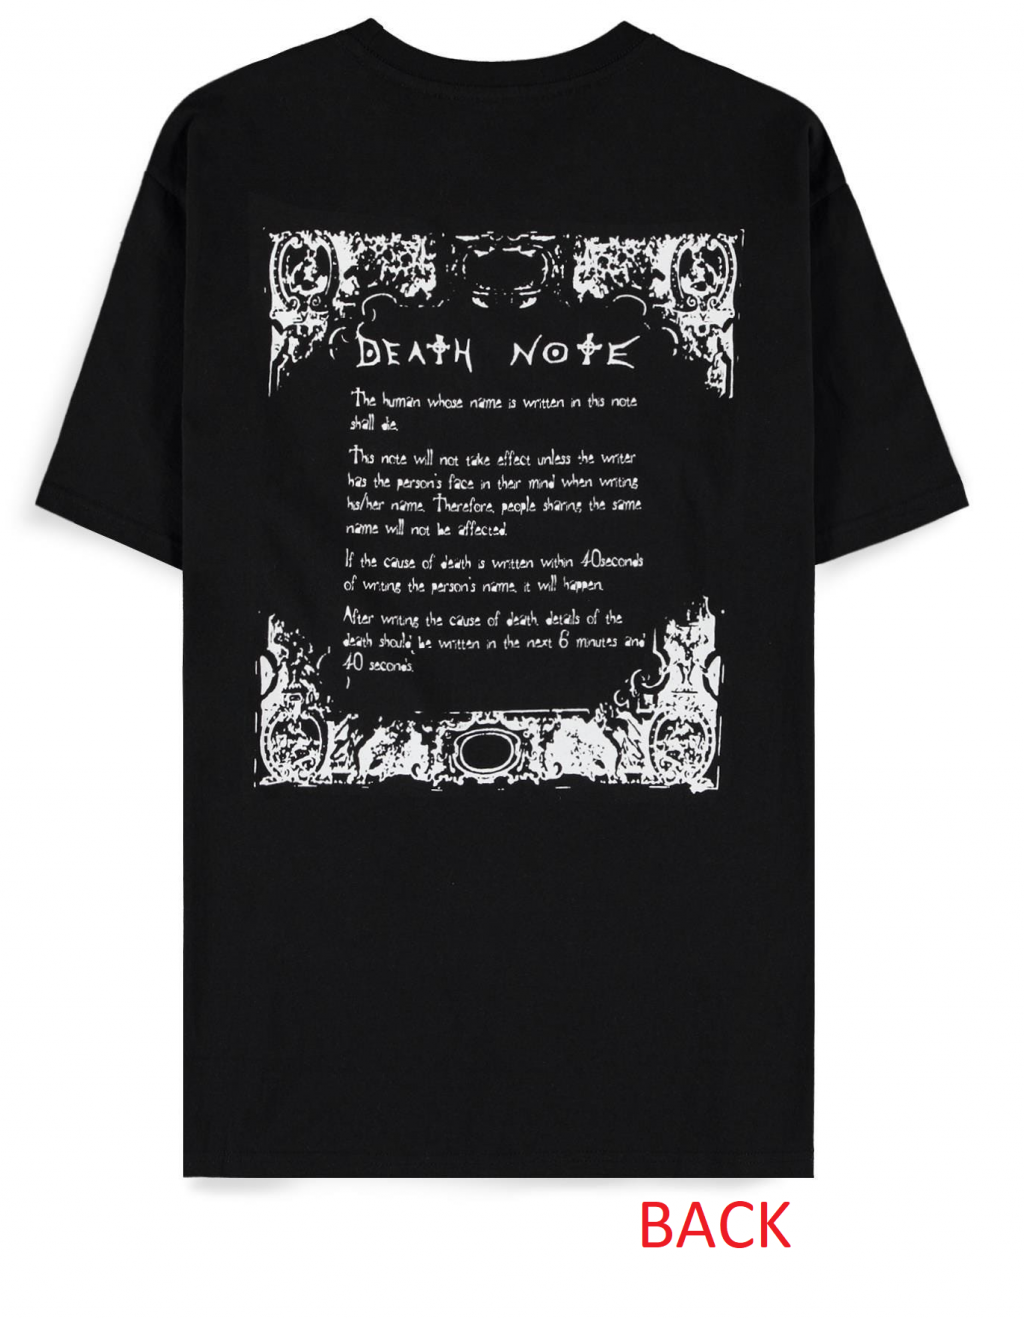 DEATH NOTE - Ryuk Square - Men's Black T-Shirt (XL)